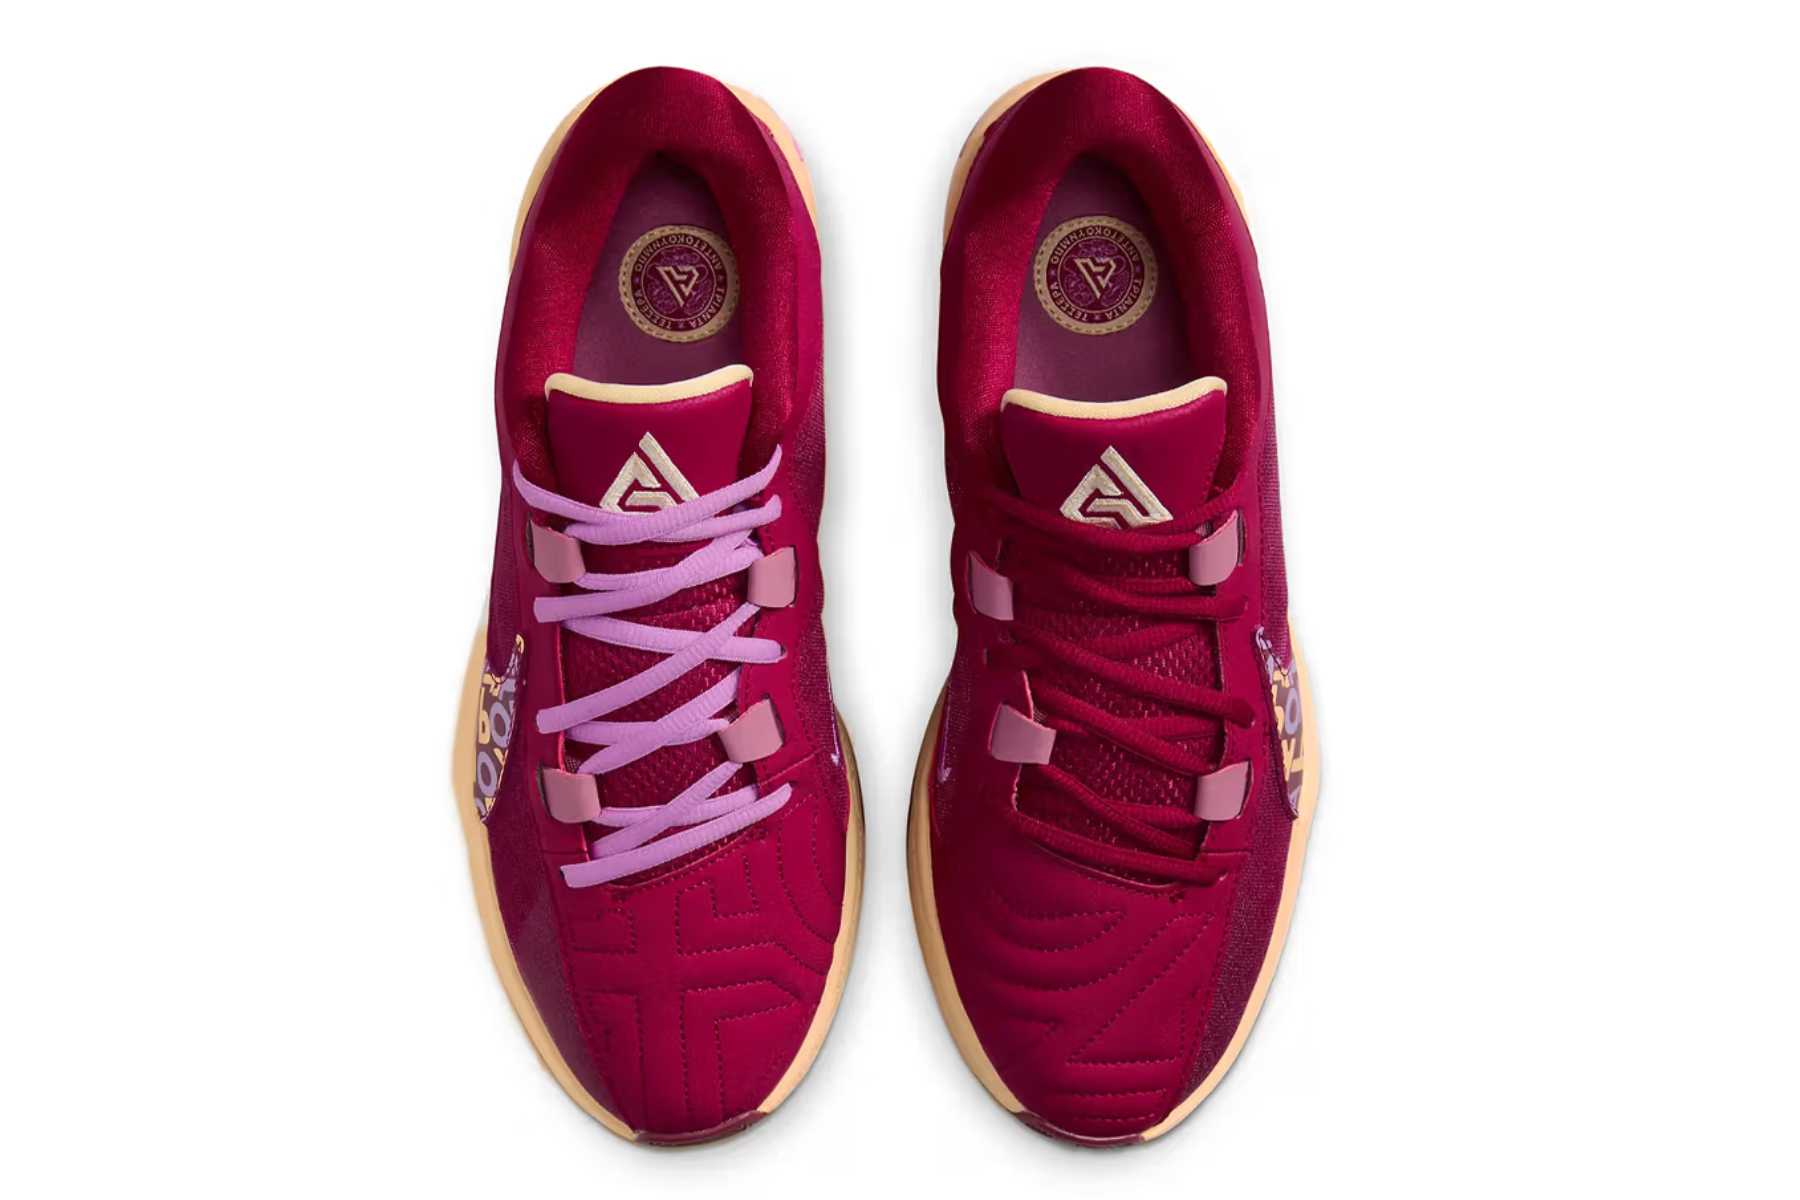 Giannis Antetokounmpo's Nike Zoom Freak 5s are actually fashionable.